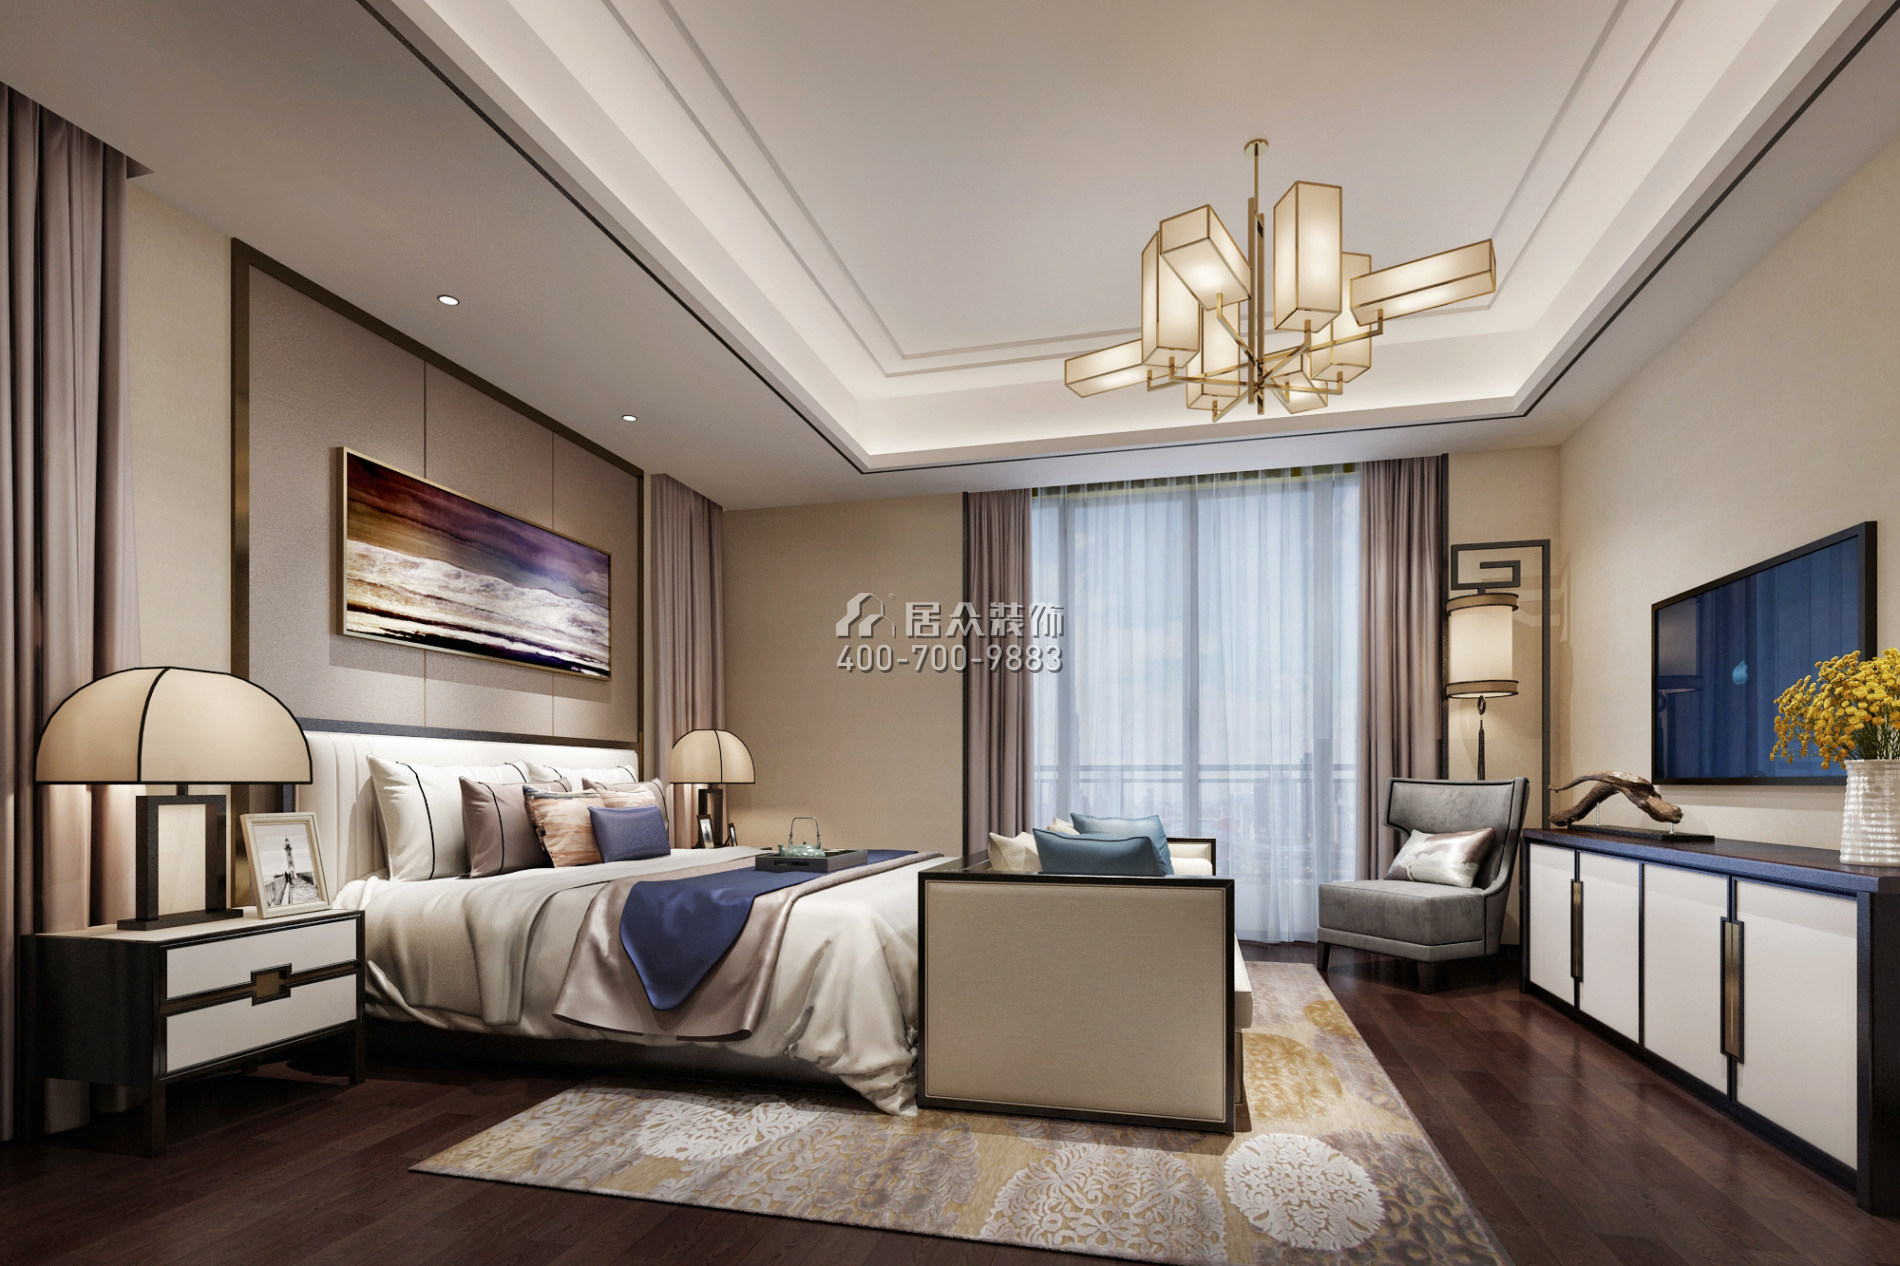 岭南公馆410平方米中式风格平层户型卧室装修效果图